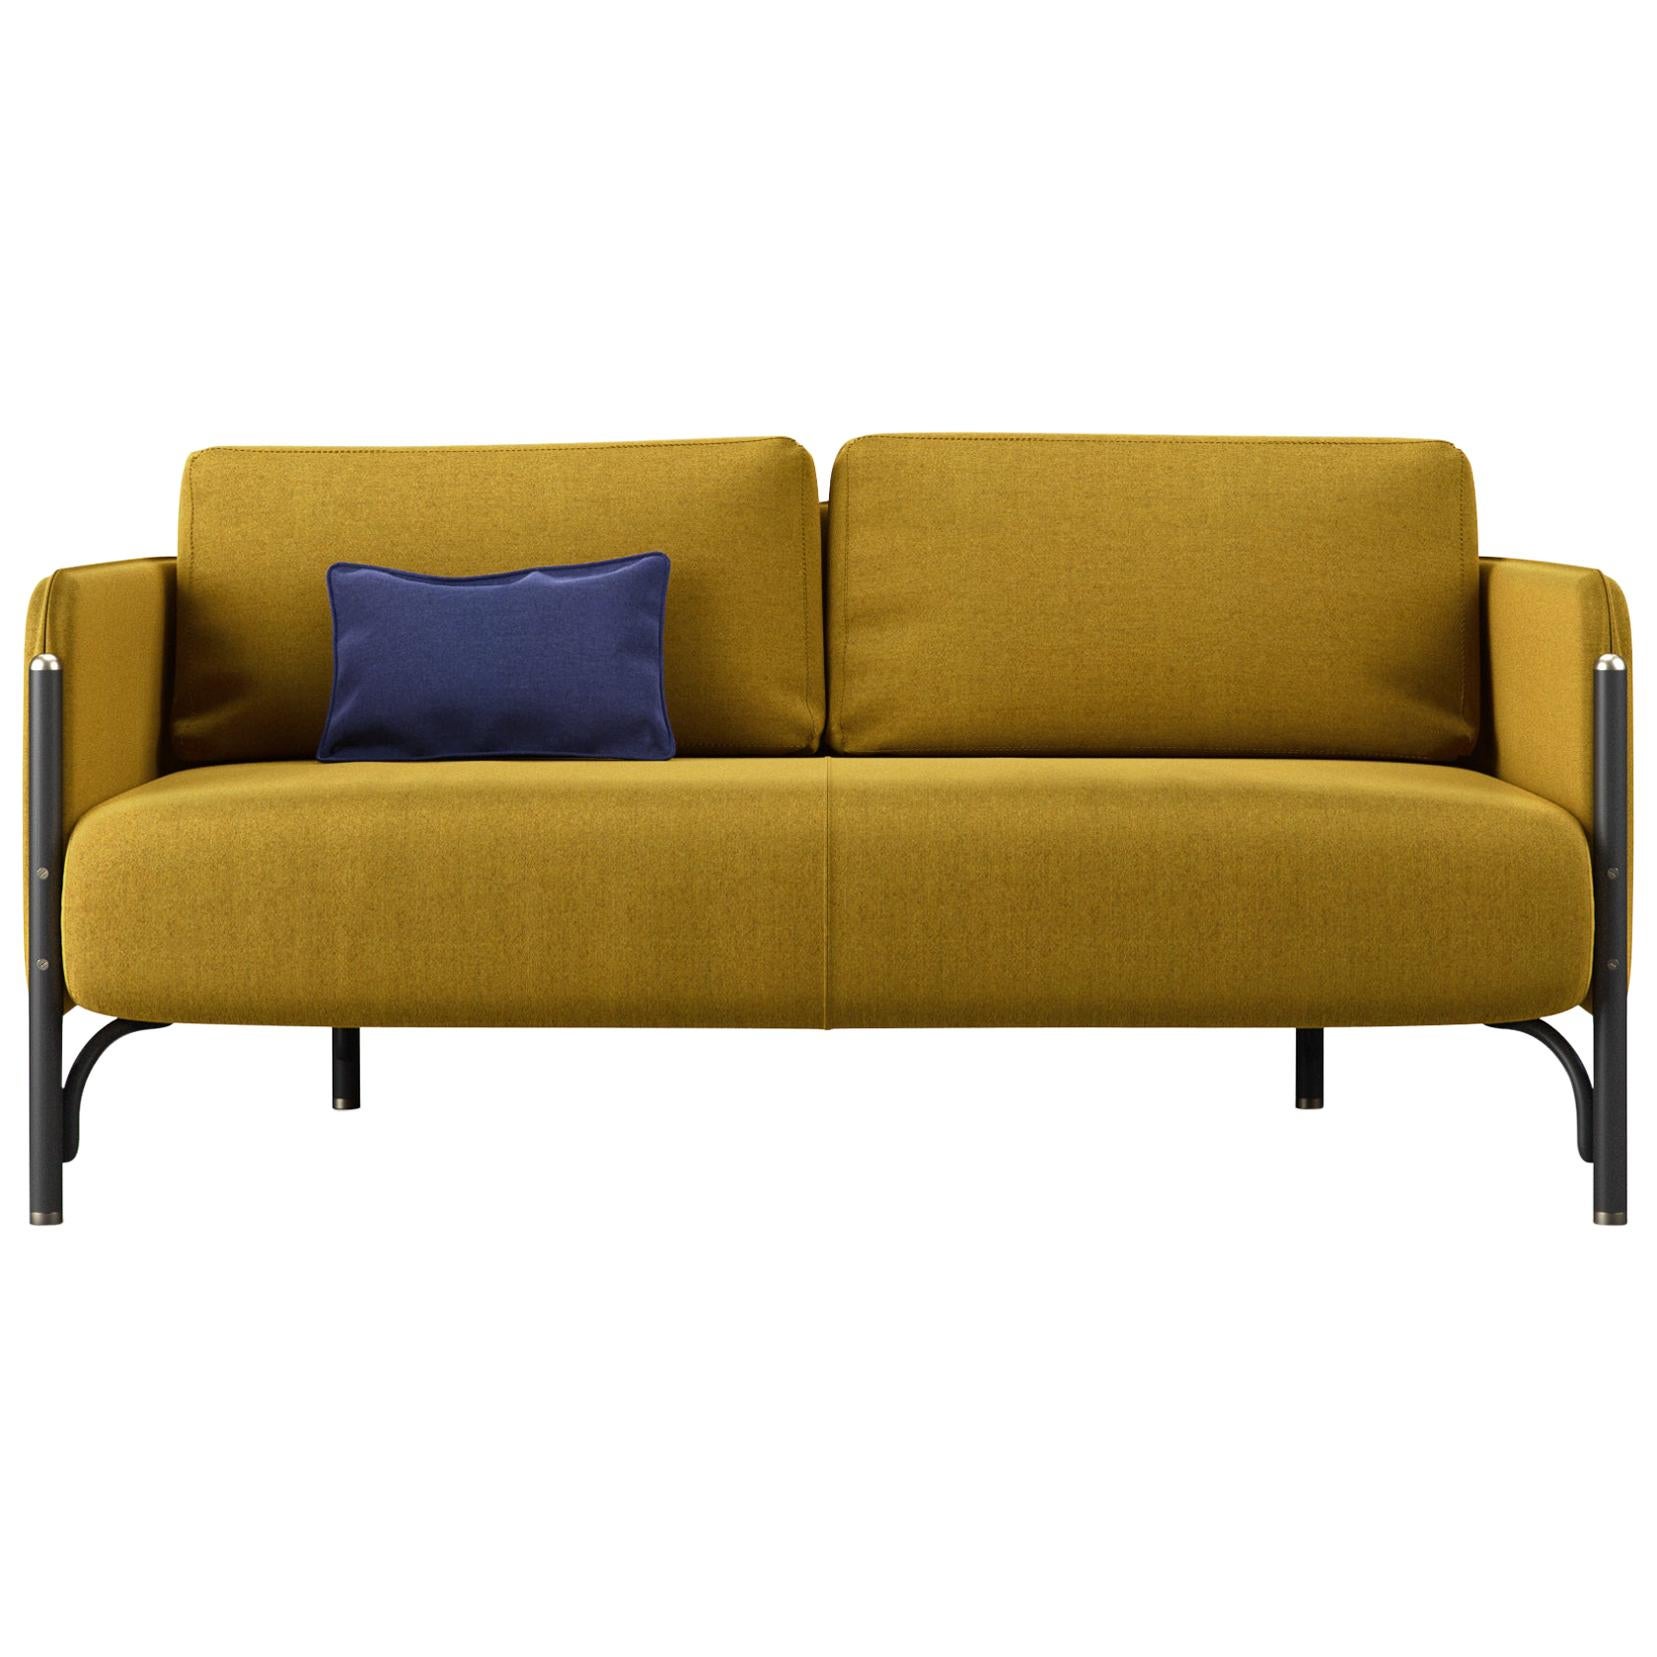 Gebrüder Thonet Vienna GmbH Jannis 2-Seater Sofa in Foam & Golden Brown Fabric